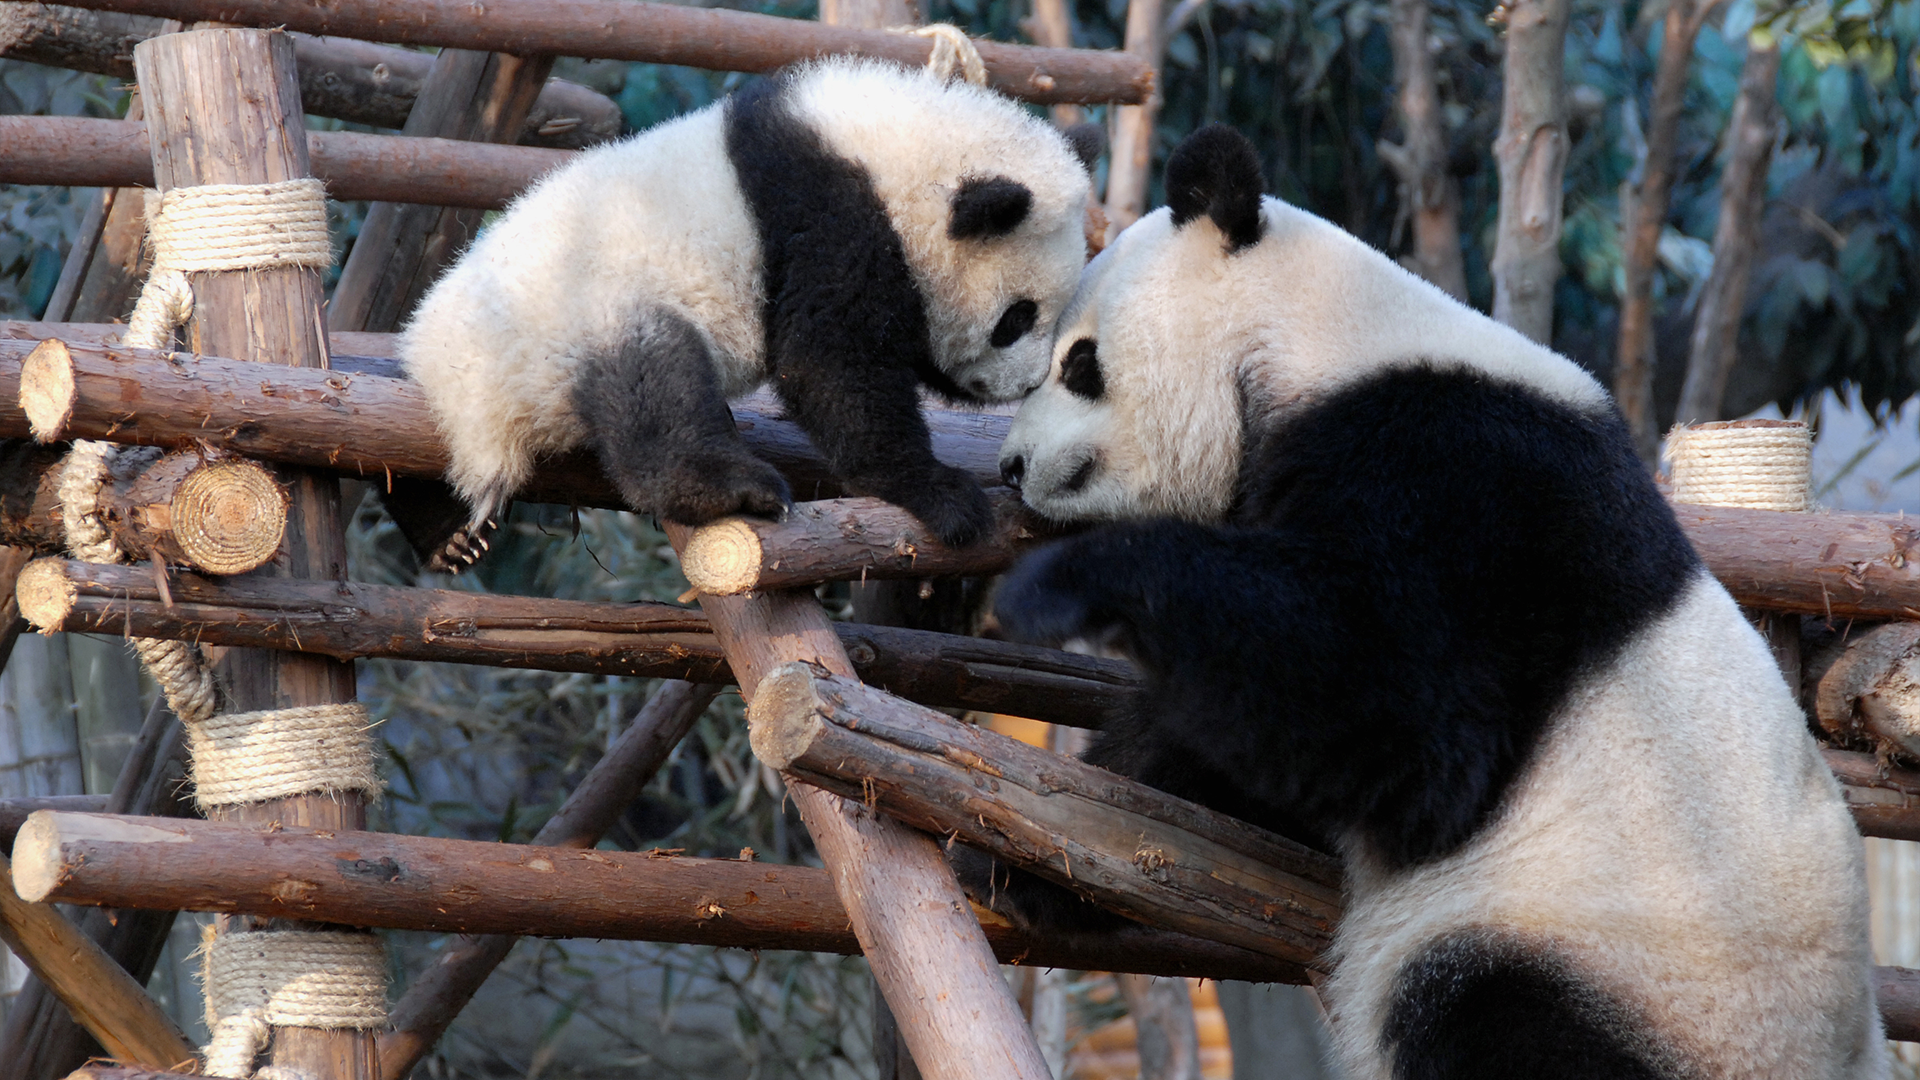 Baby panda and parent 